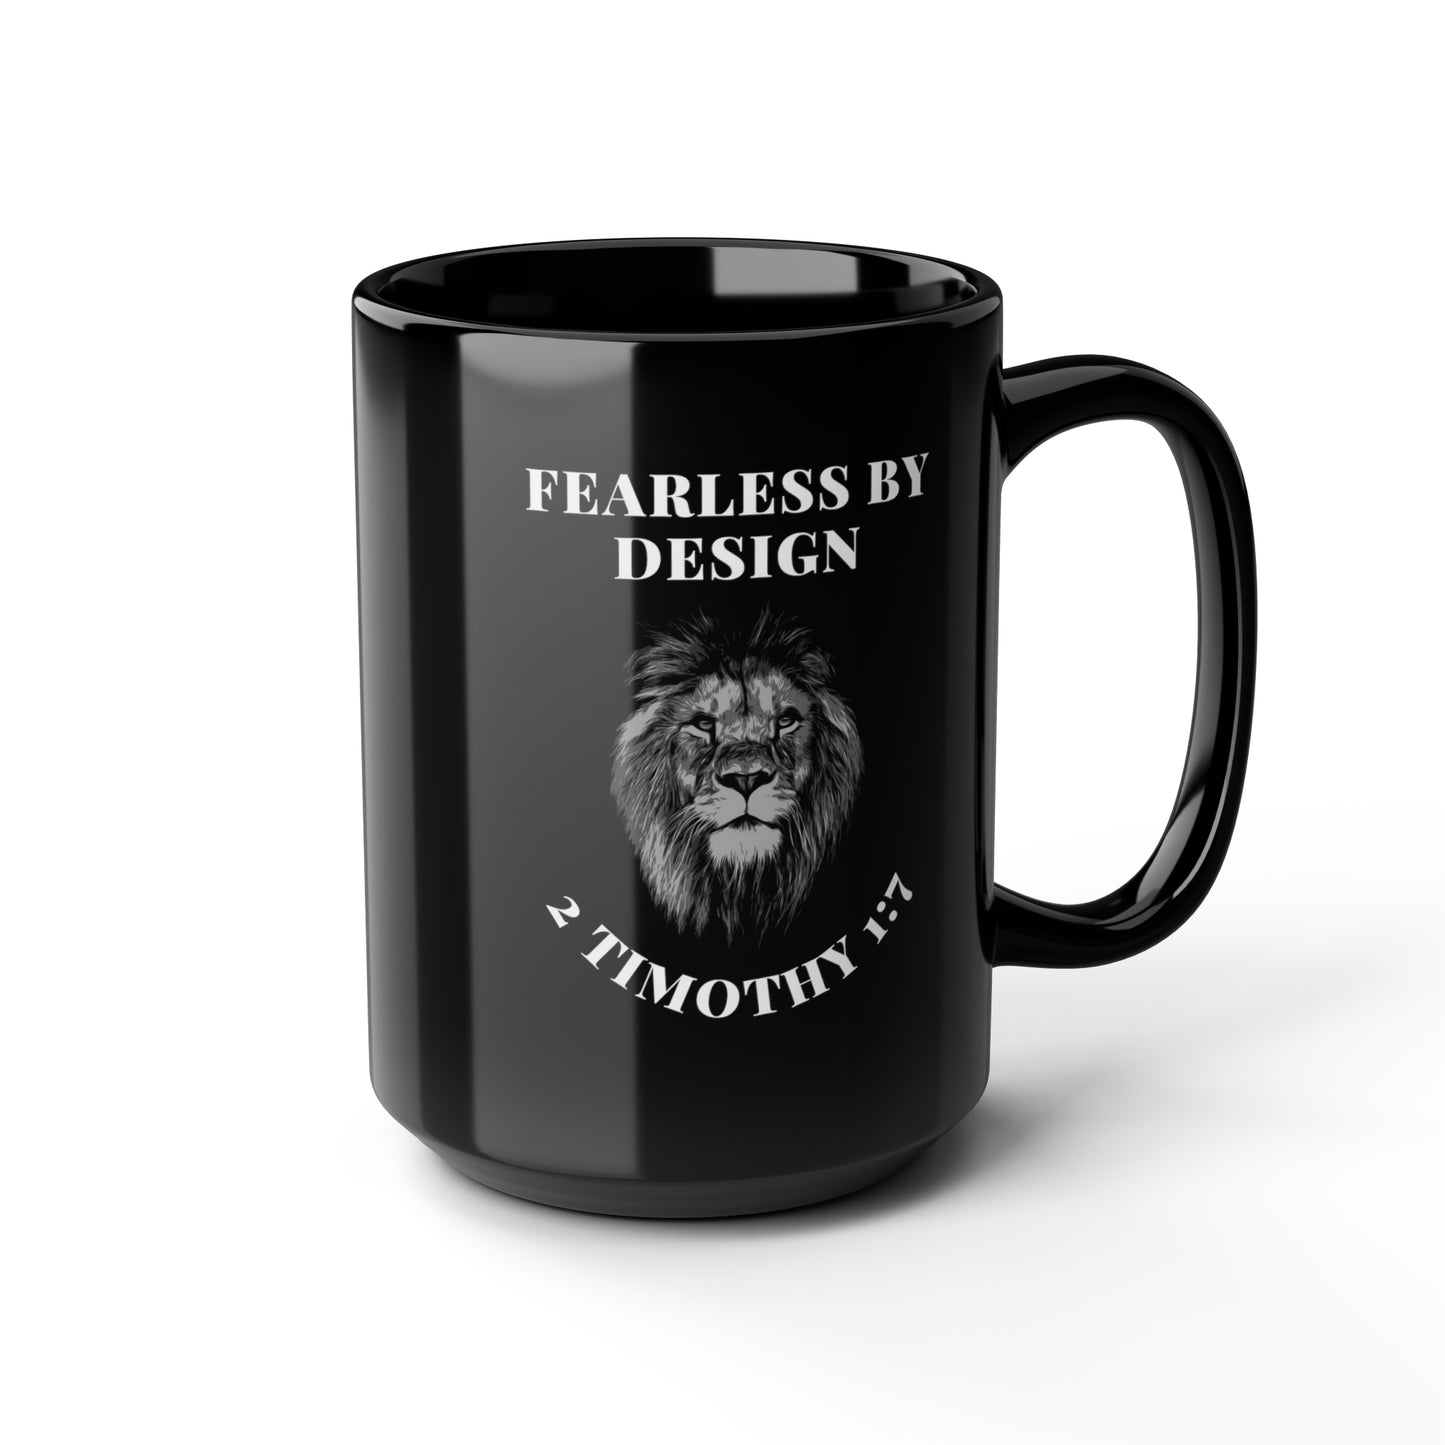 Fearless By Design, Black Mug, 15oz. Left-Handed